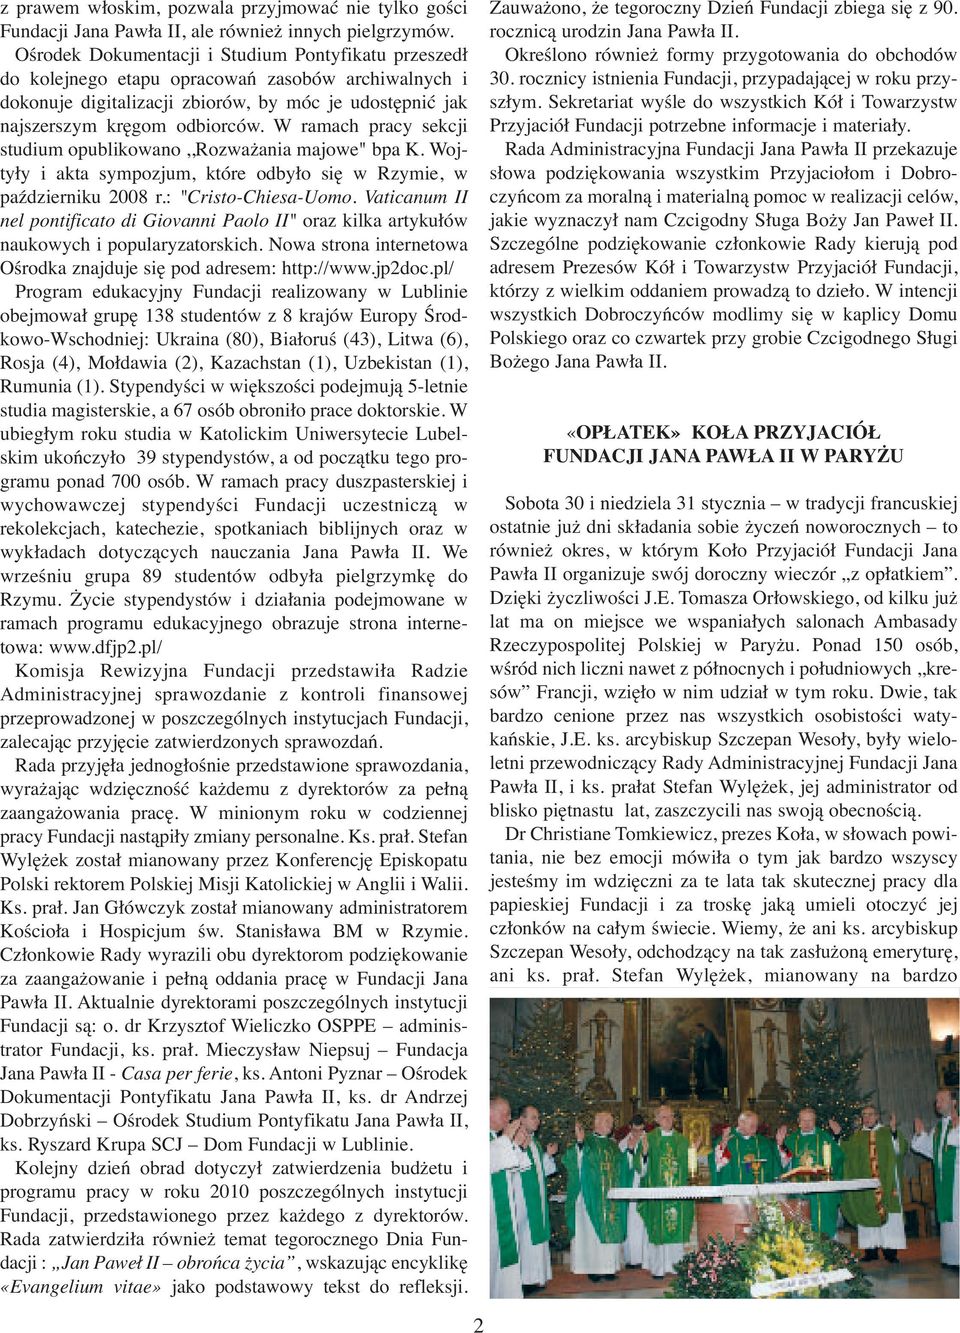 W ramach pracy sekcji studium opublikowano,,rozważania majowe" bpa K. Wojtyły i akta sympozjum, które odbyło się w Rzymie, w październiku 2008 r.: "Cristo-Chiesa-Uomo.